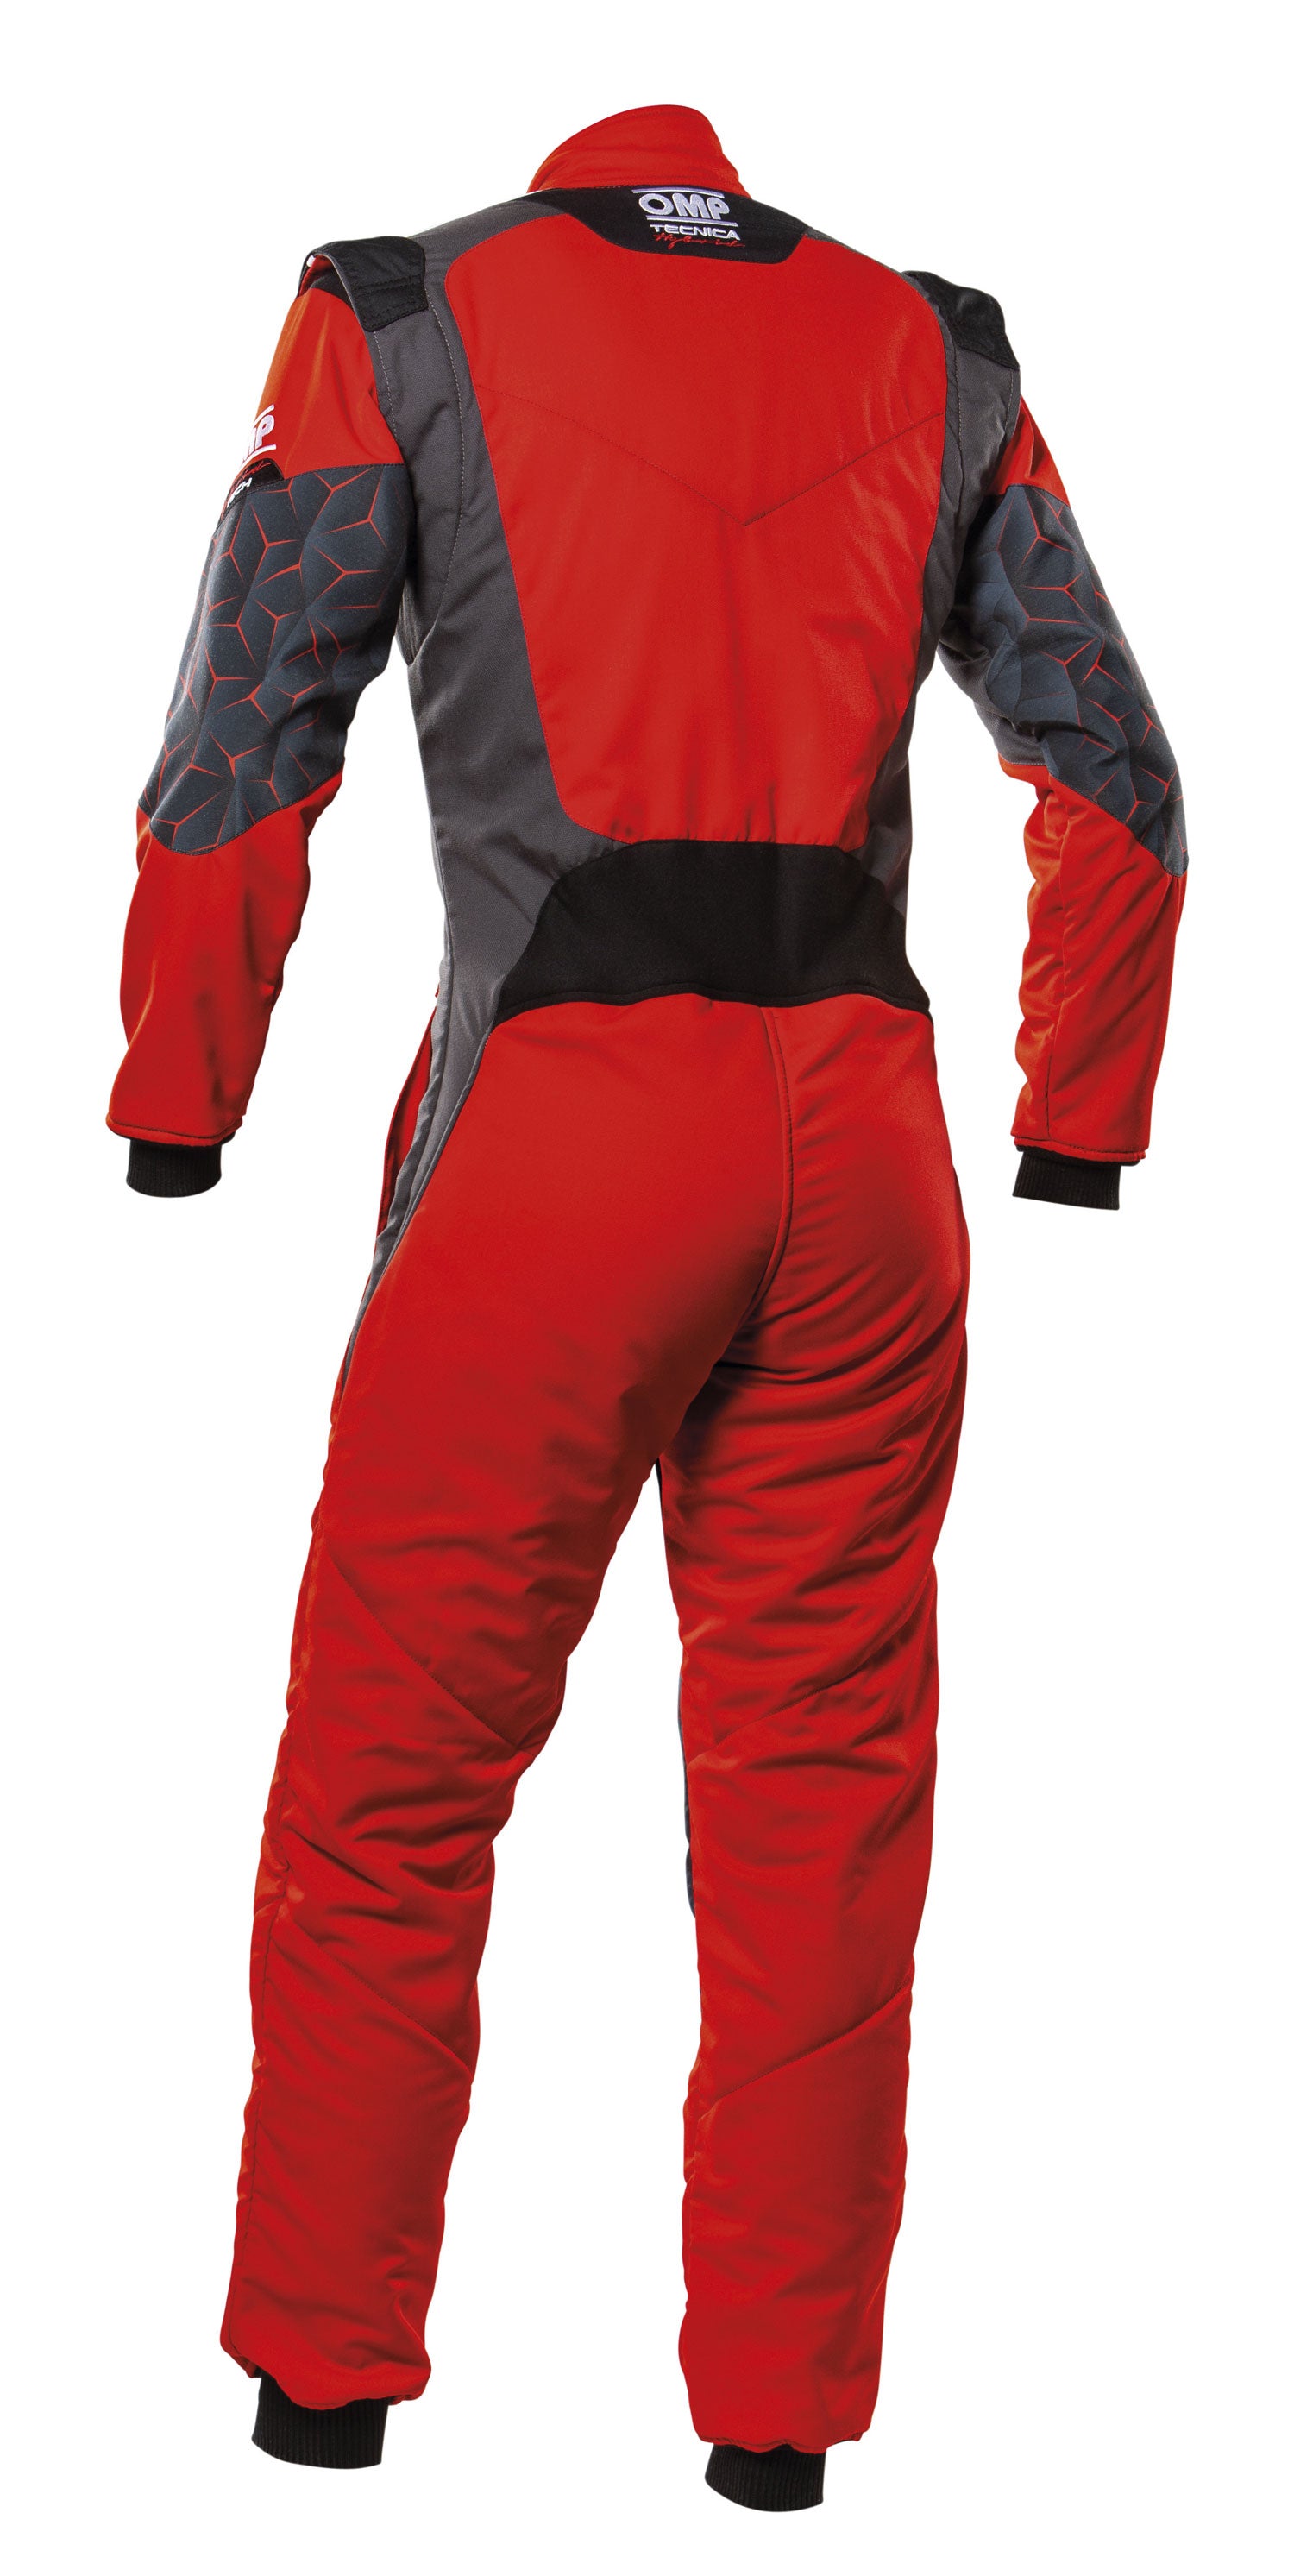 OMP IA0-1864-A01-060-48 (IA0186406048) TECNICA HYBRID Racing suit, FIA 8556-2018, red/black, size 48 Photo-1 